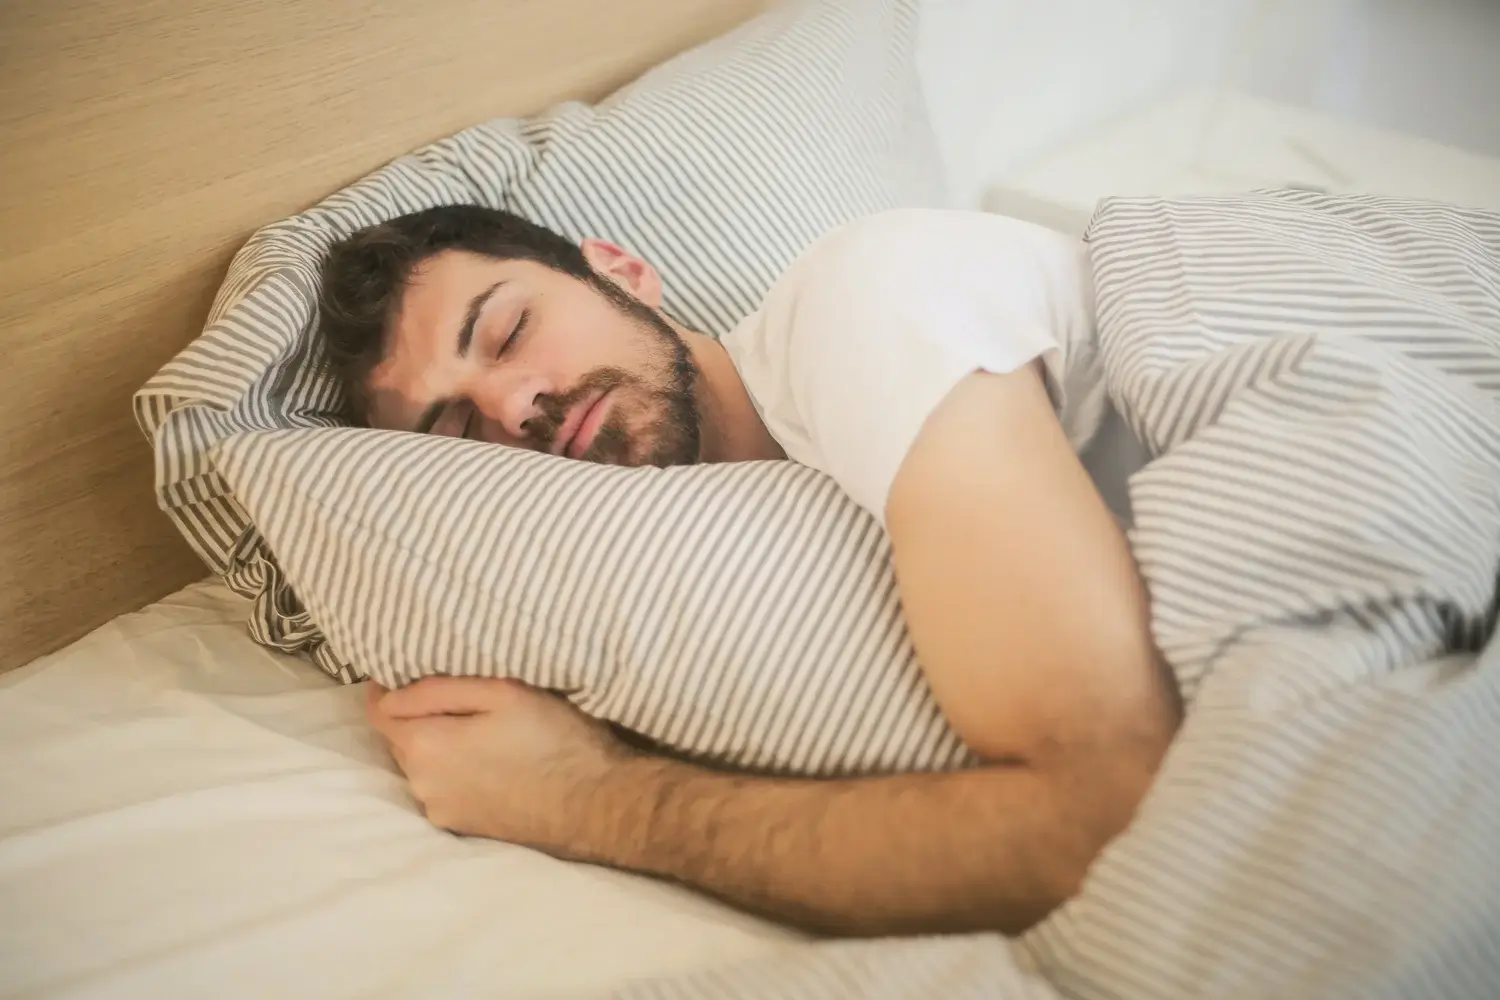 side effect of sleeping with a fan on